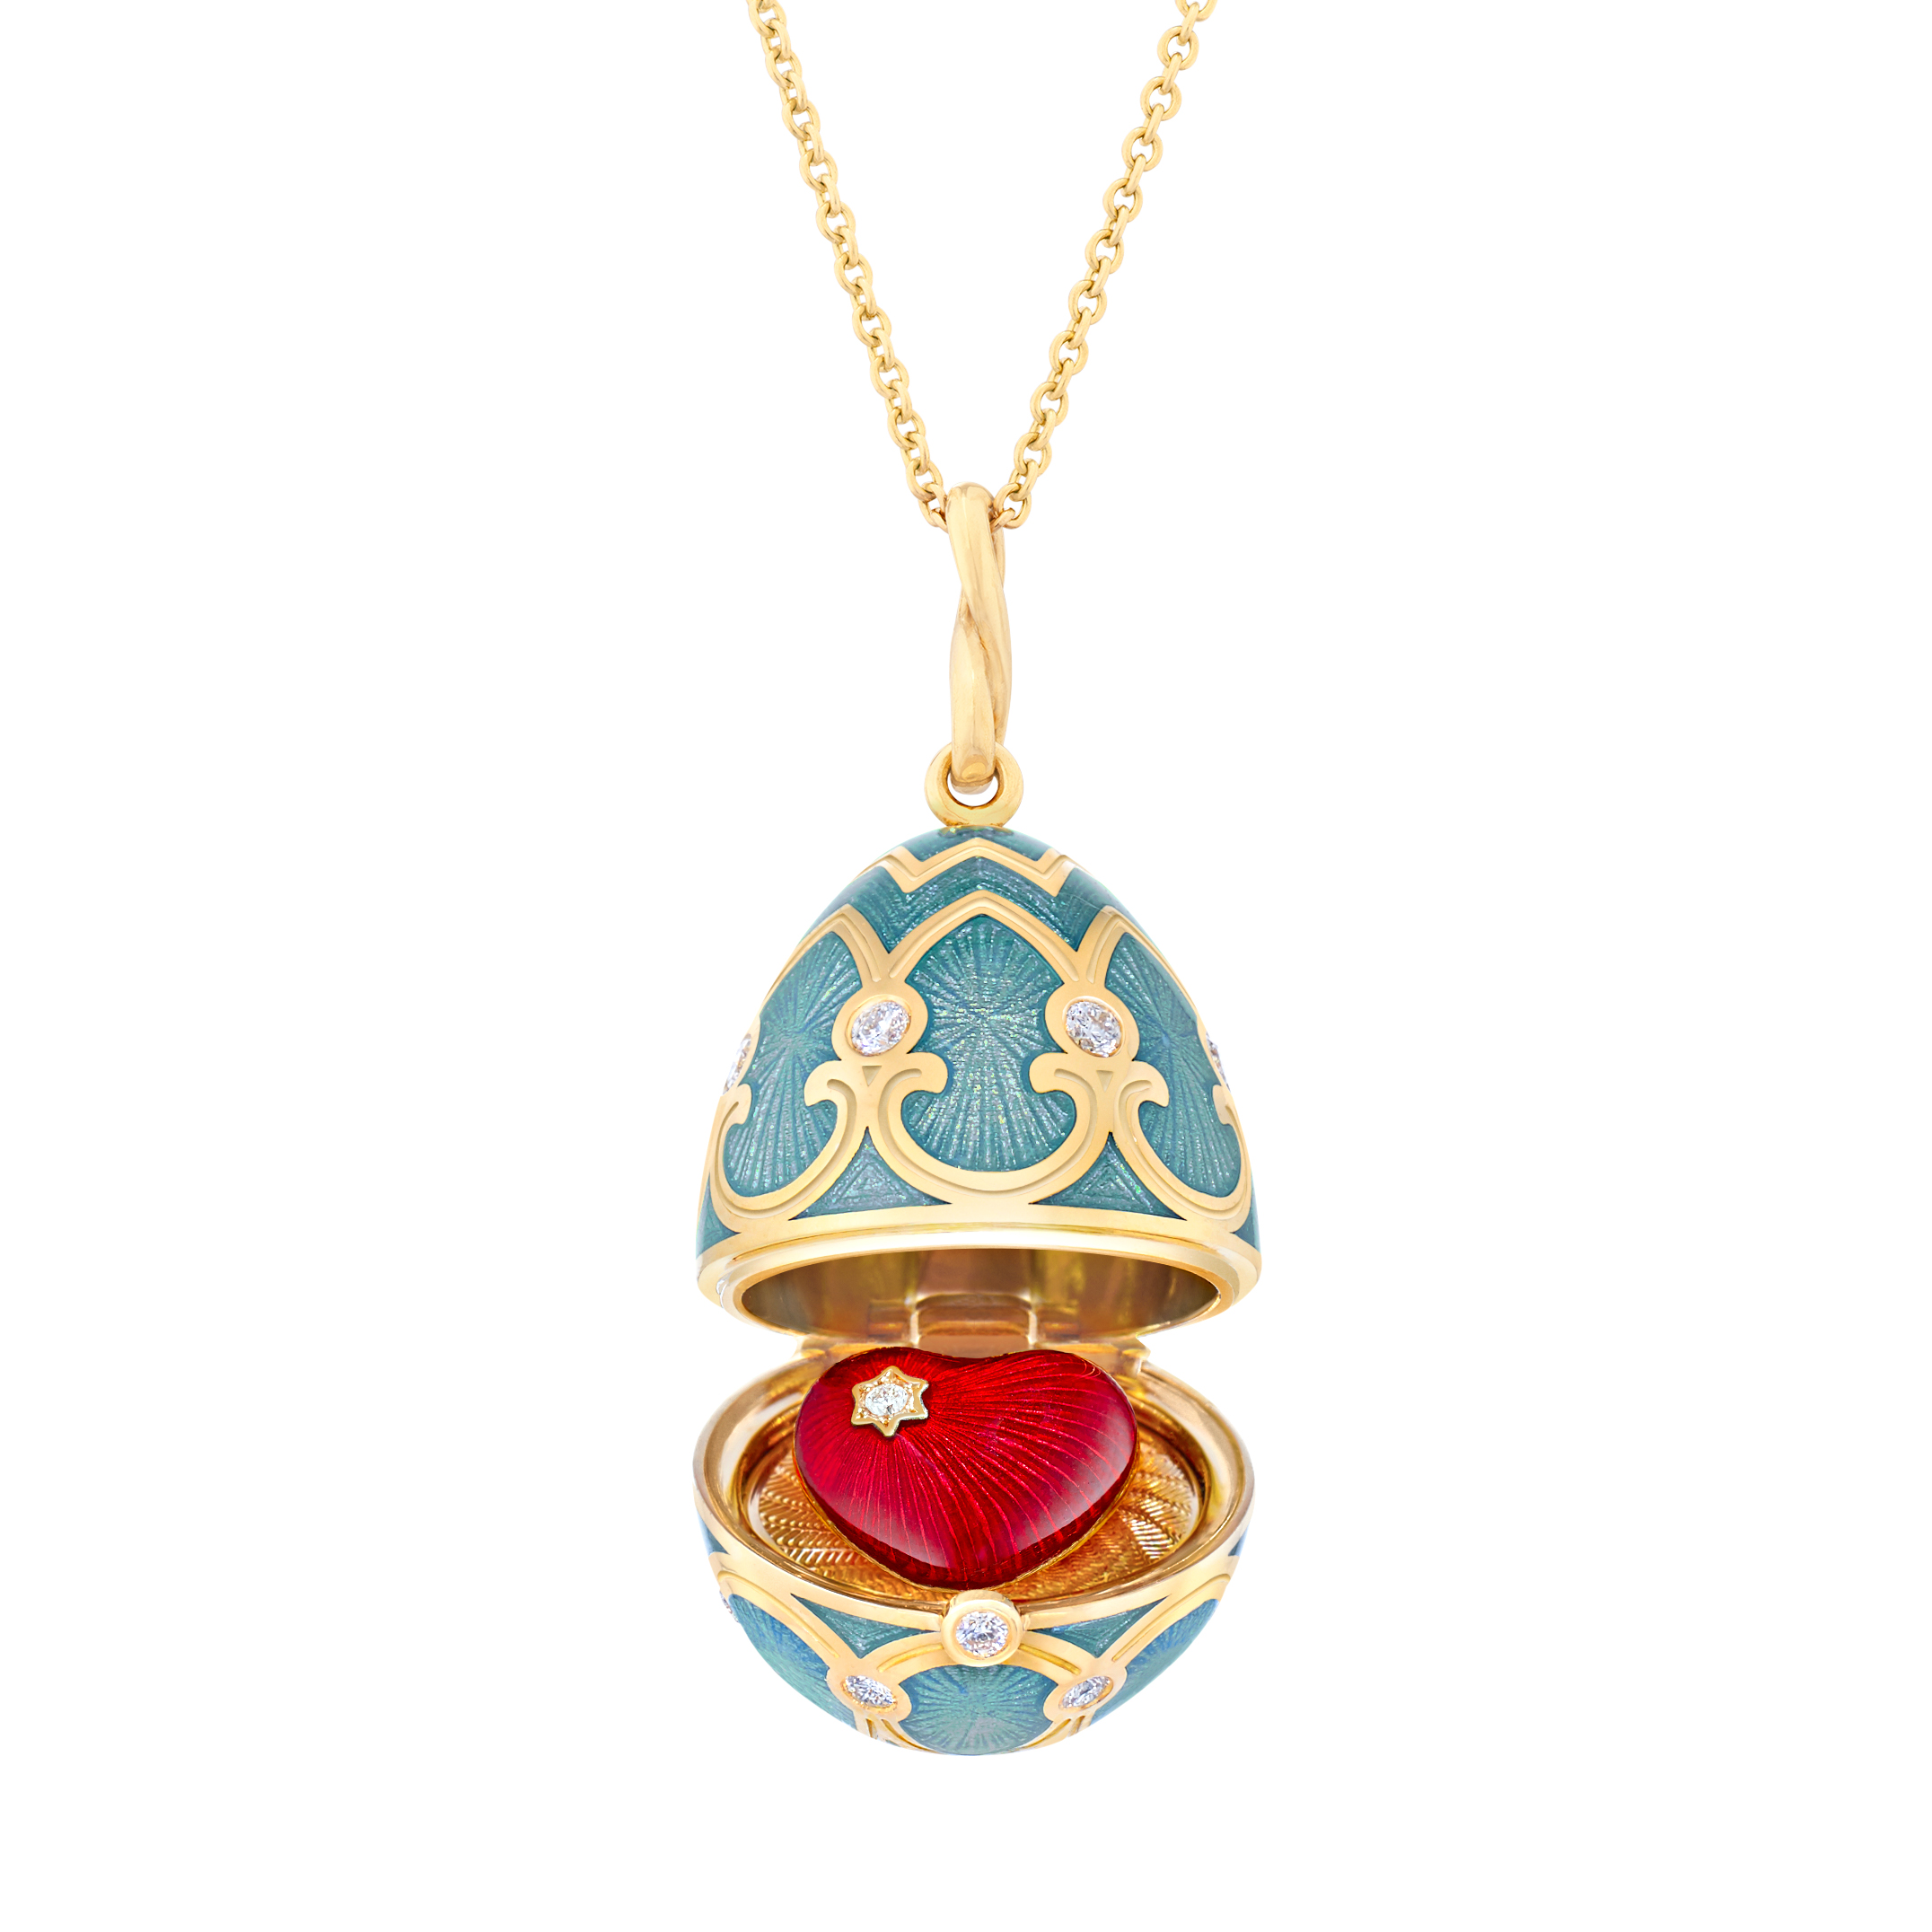 يناصر الاسم المستعار حجاب  هدية من مجوهرات Fabergé | هدية عيد الحب